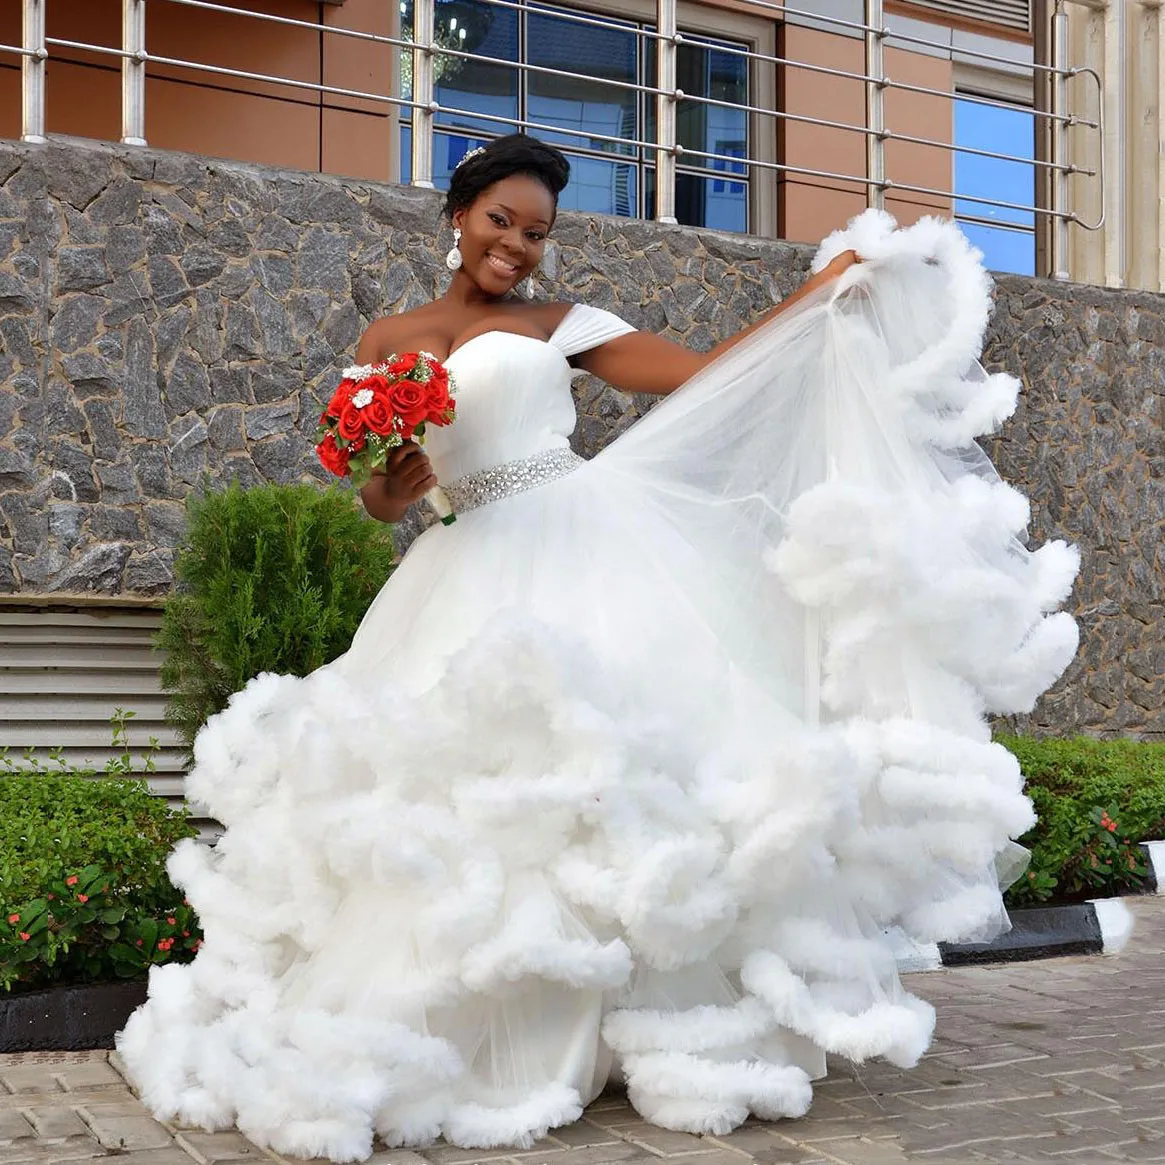 2018 Sweety Свадебные платья с плеча Многоуровневая рябить белые свадебные платья с баской формы в форме облака, длиной до пола, свадебные платья на заказ